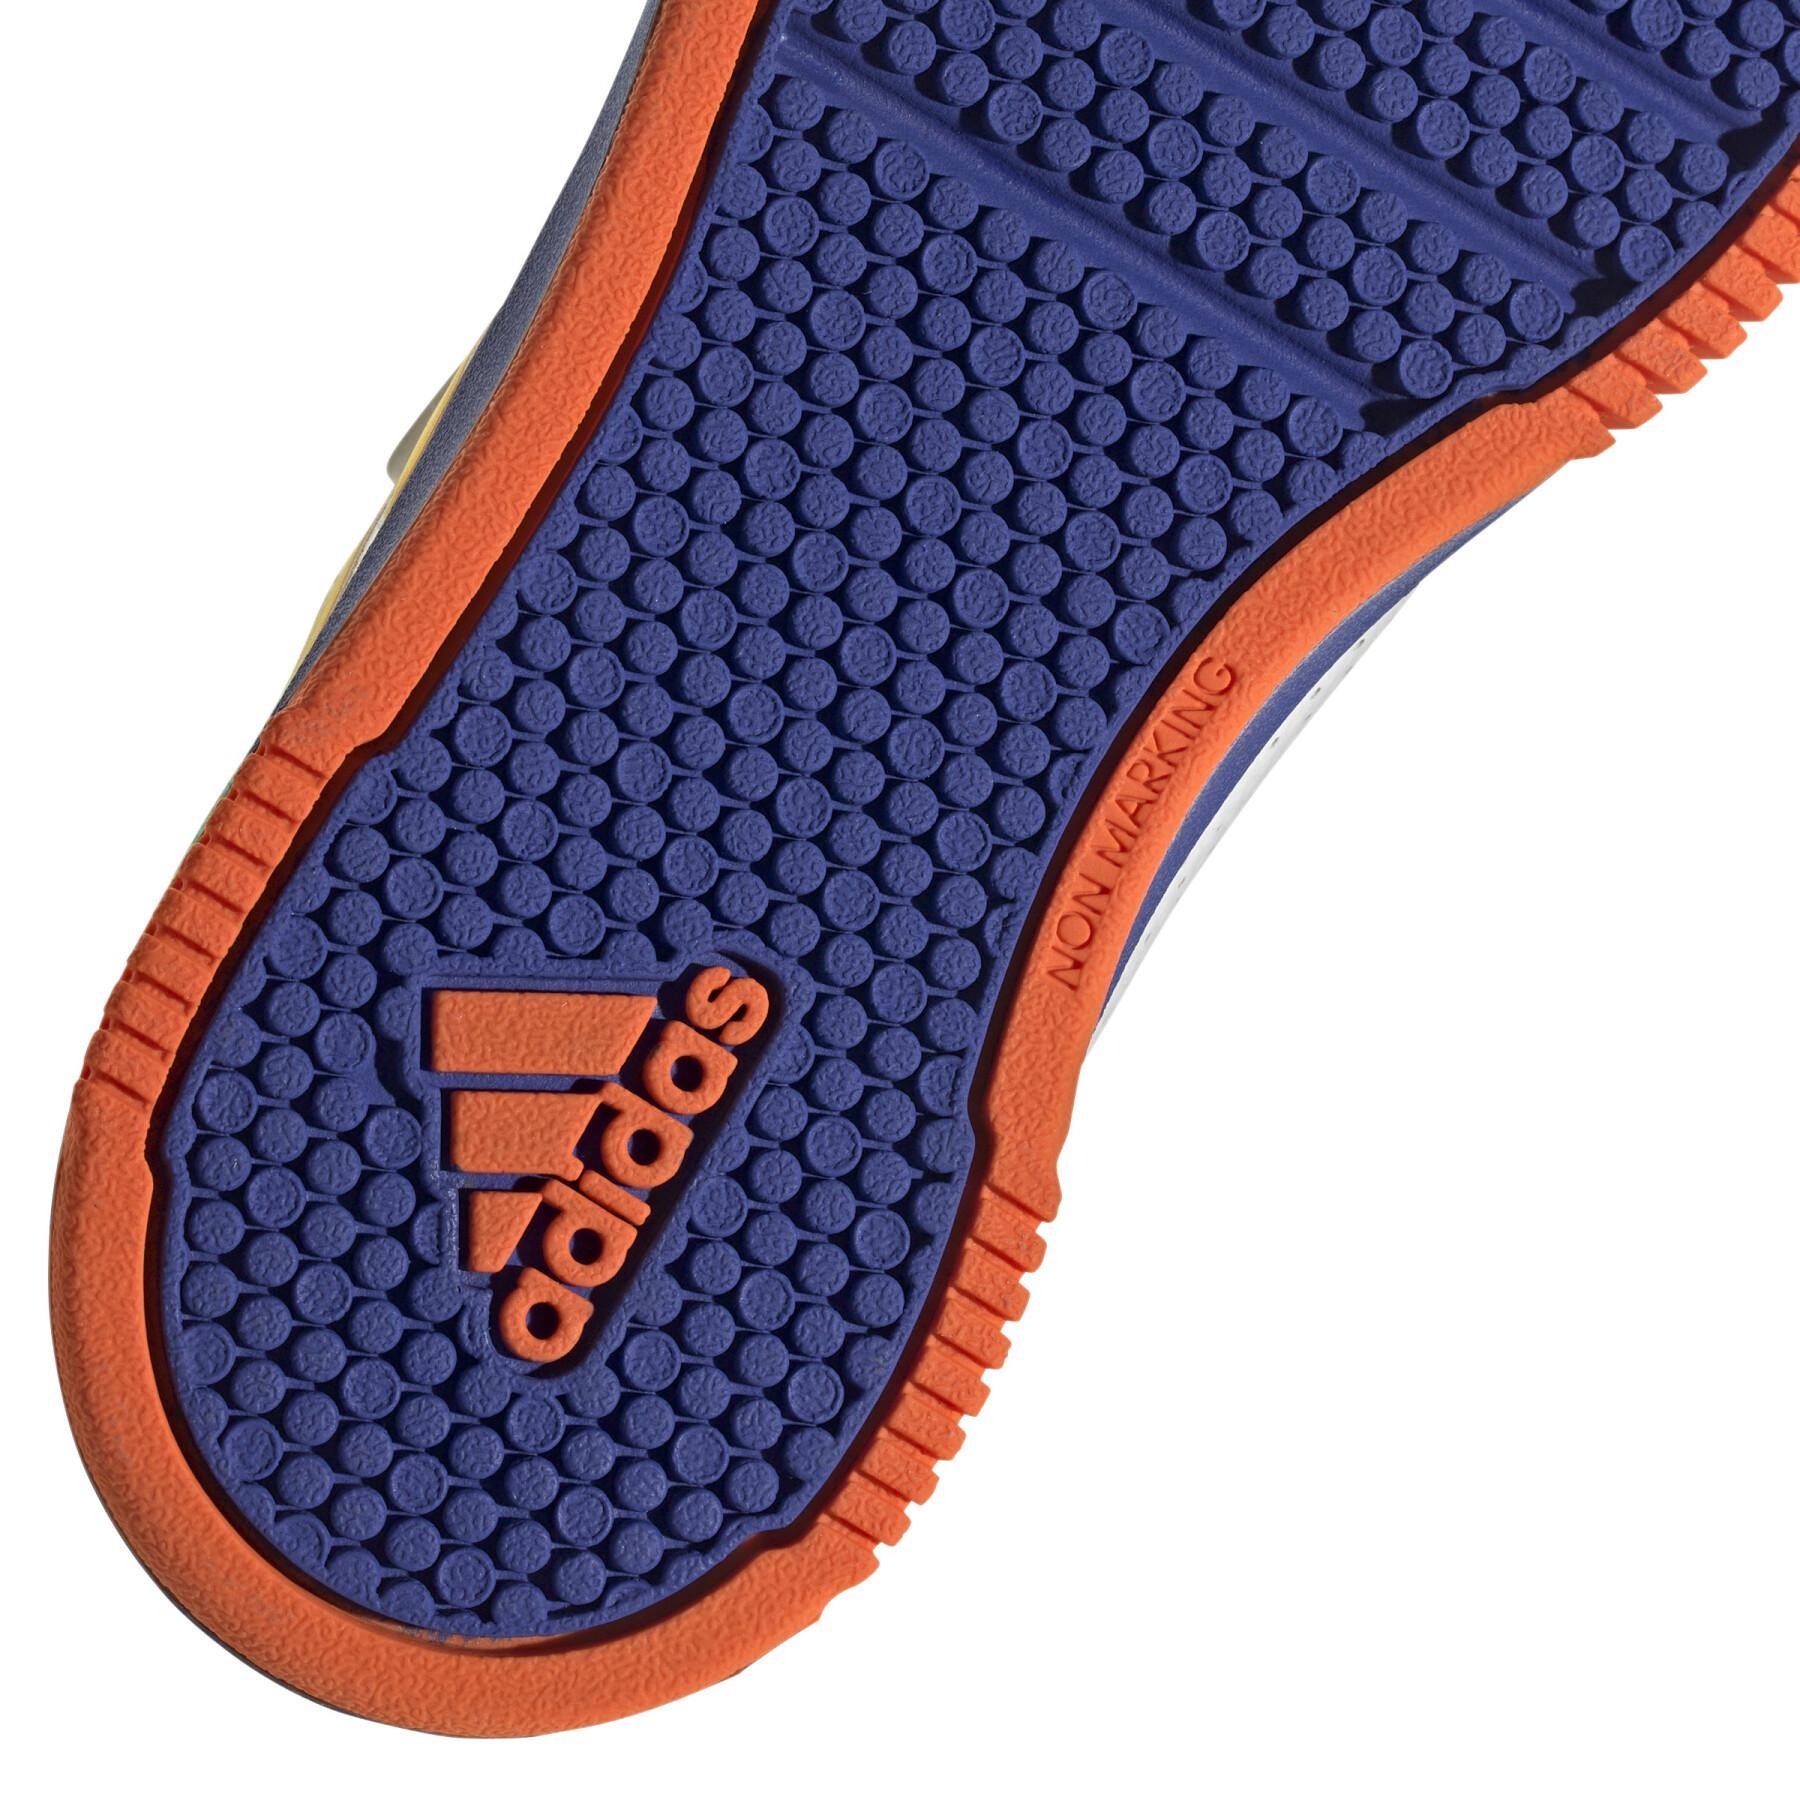 Krok- och loopskor för barn adidas Tensaur